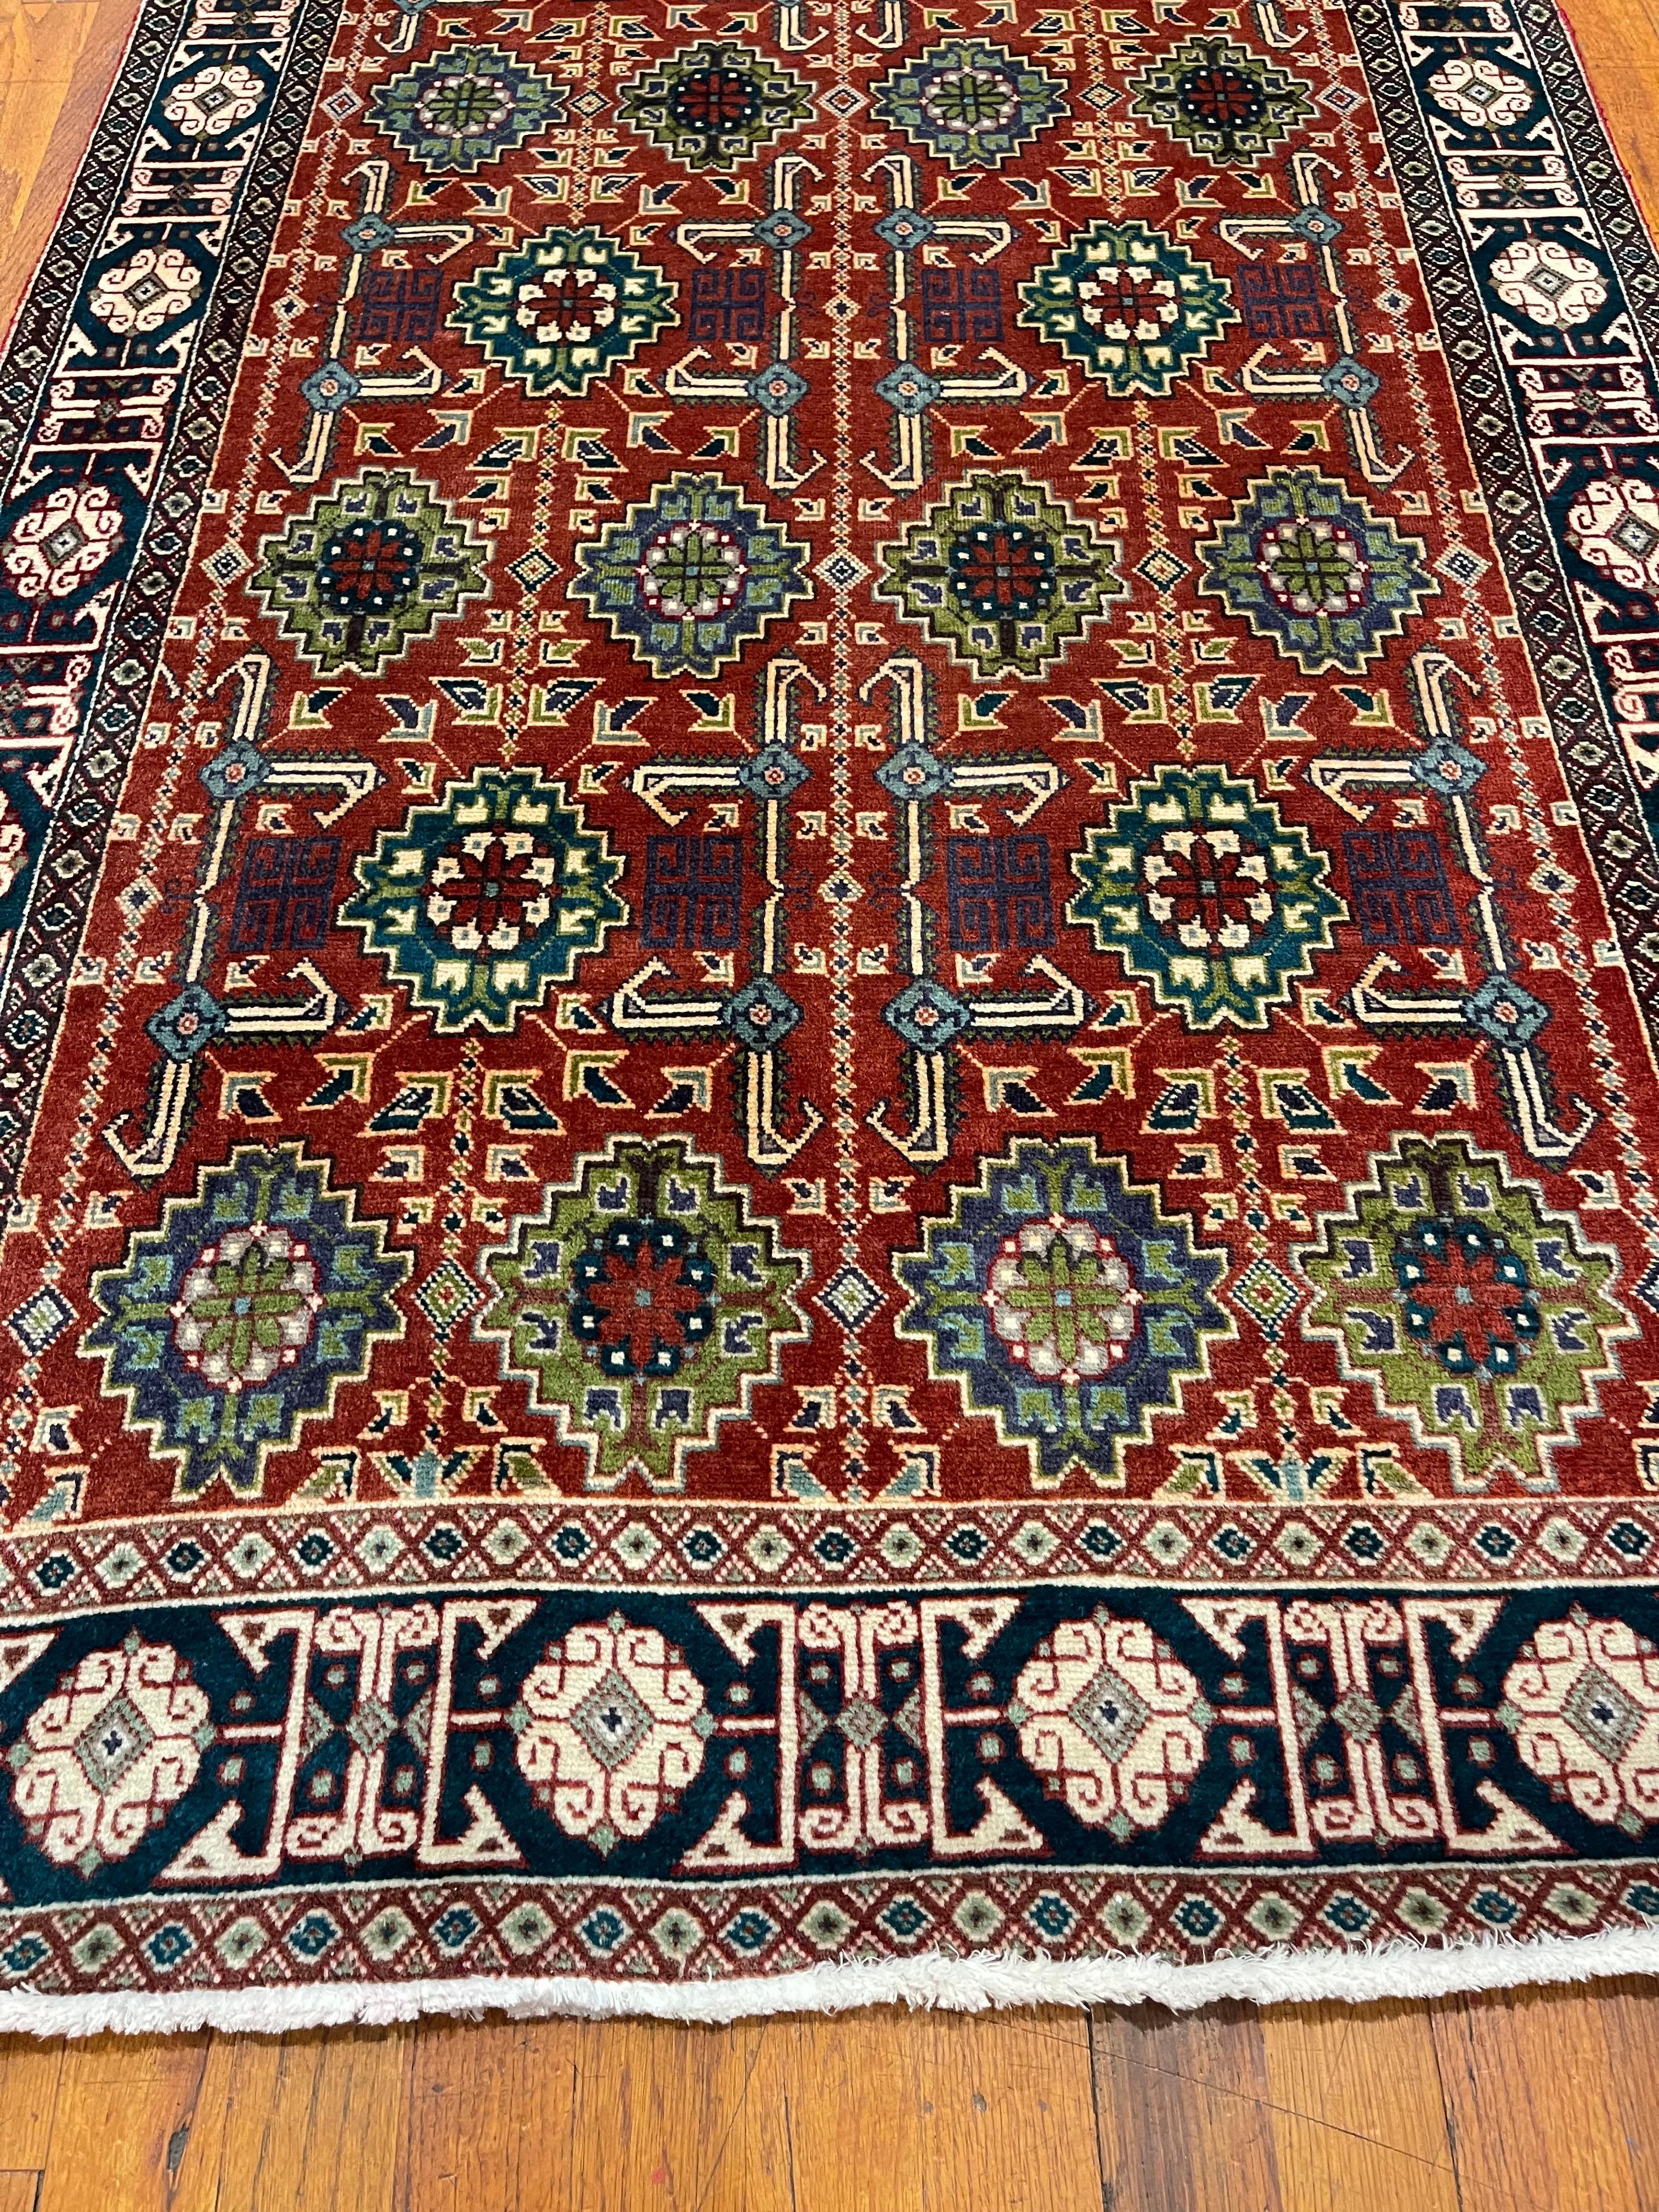 Voici un superbe tapis persan Tabriz noué à la main qui incarne la qualité de l'artisanat et la beauté intemporelle. Doté d'un ravissant motif allover connu sous le nom de Ghoba, ce tapis séduit par son mélange unique de couleurs et de motifs. La